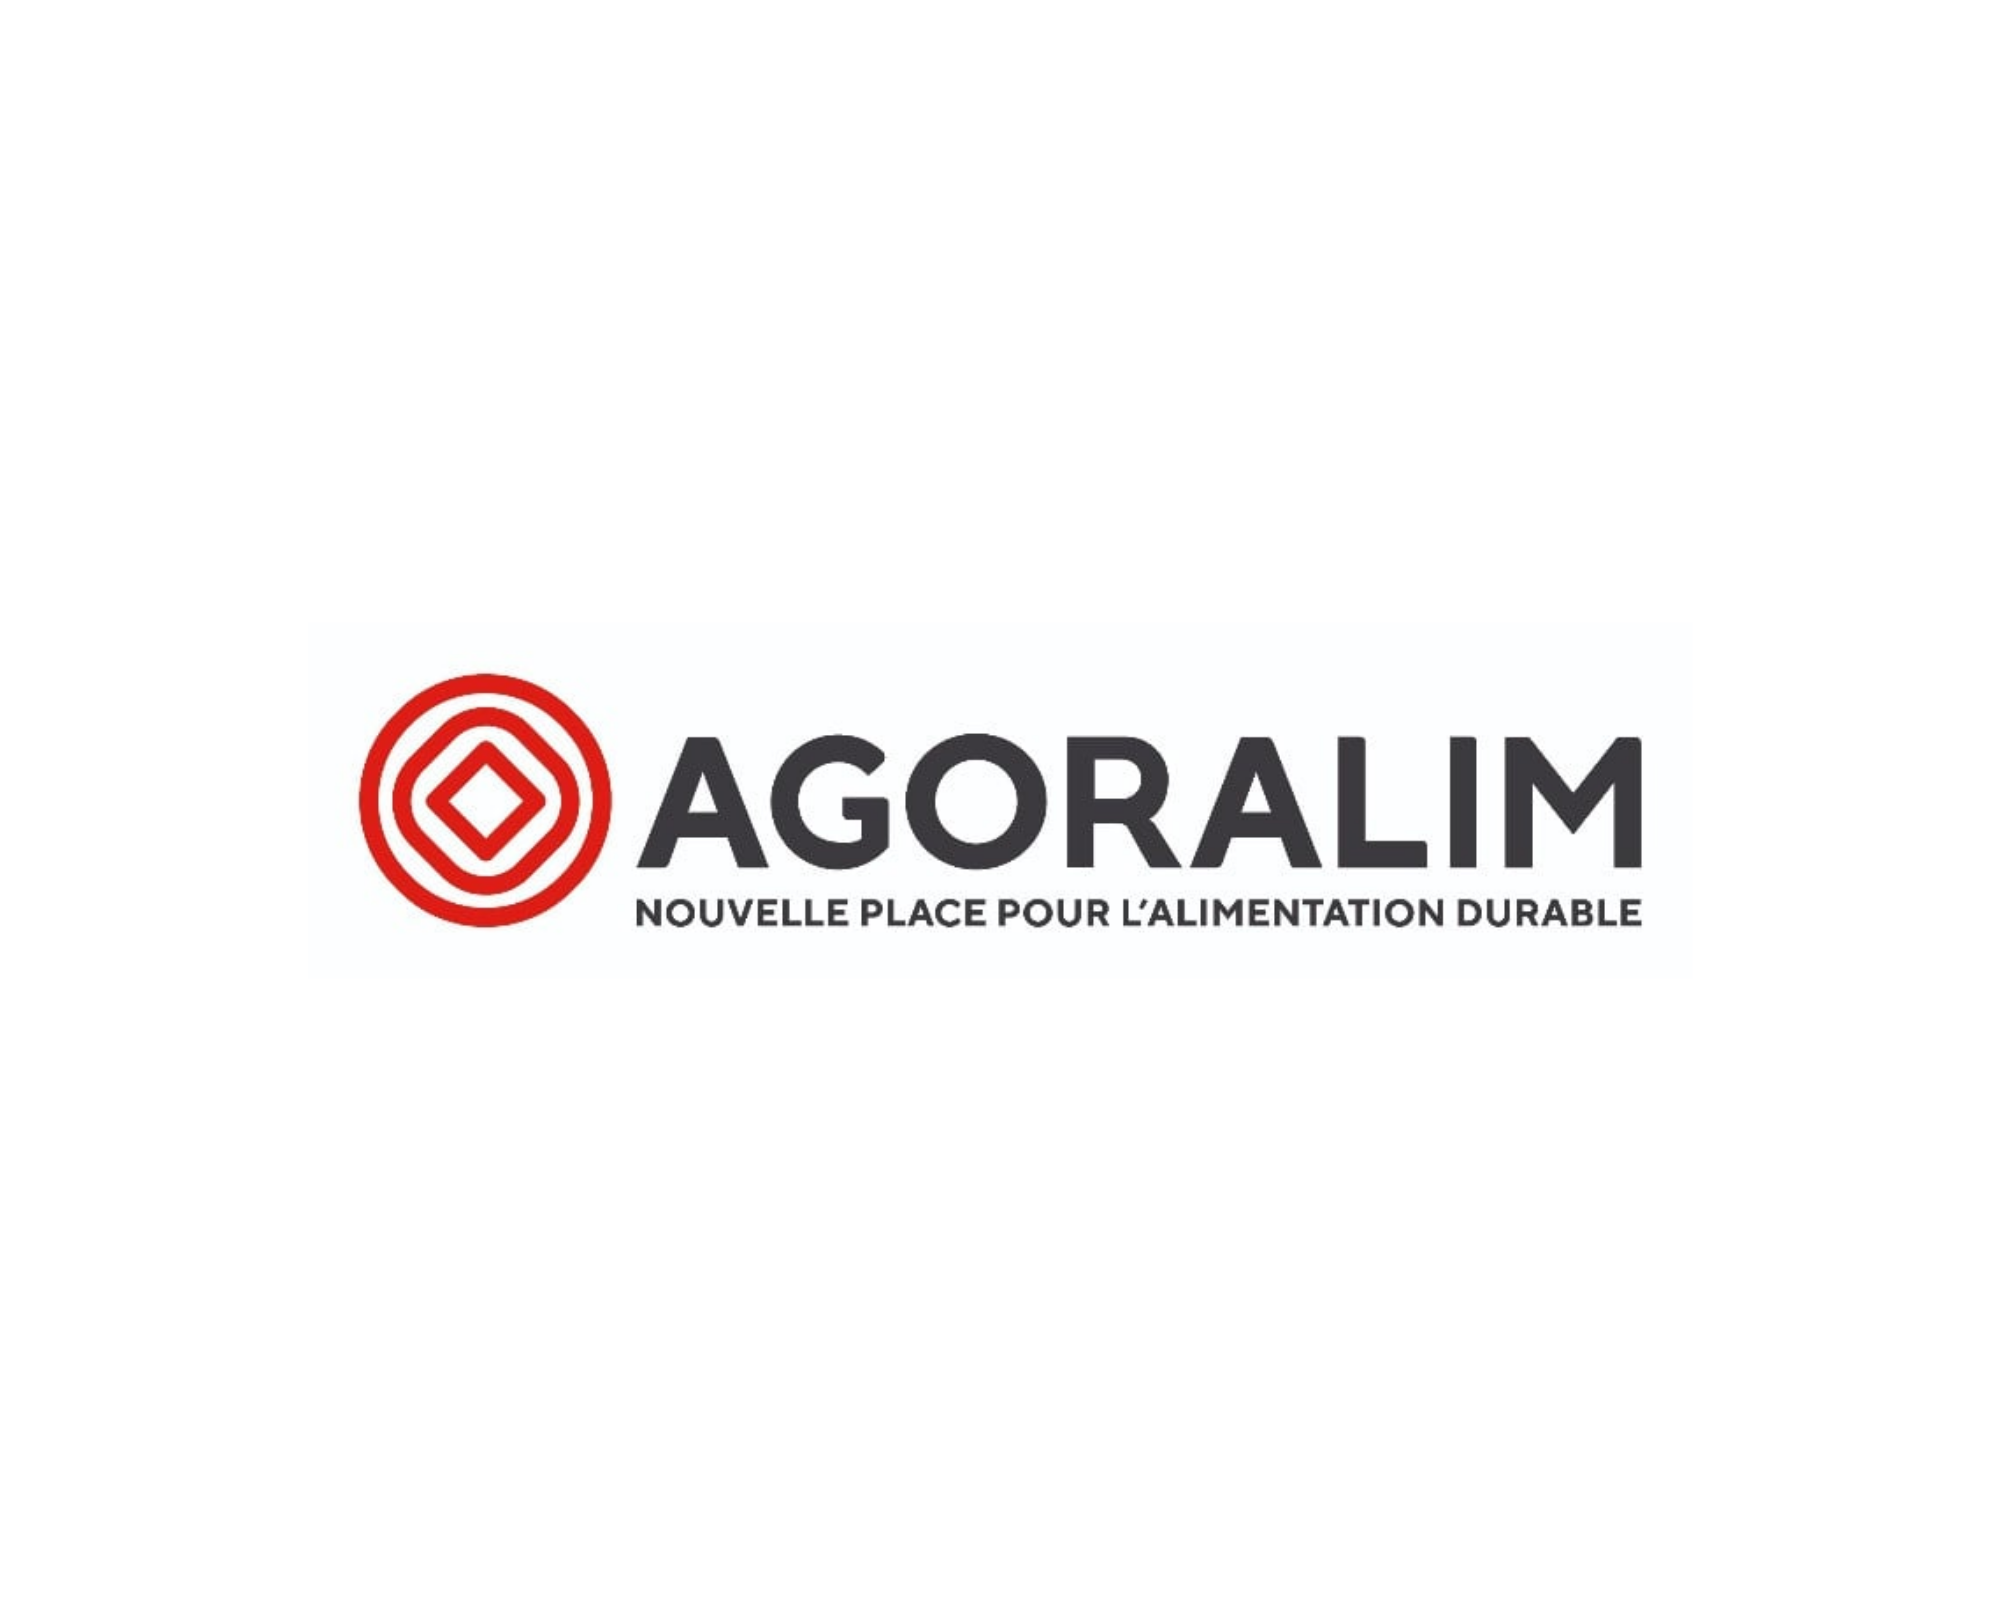 Remise du rapport Agoralim par Stéphane Layani